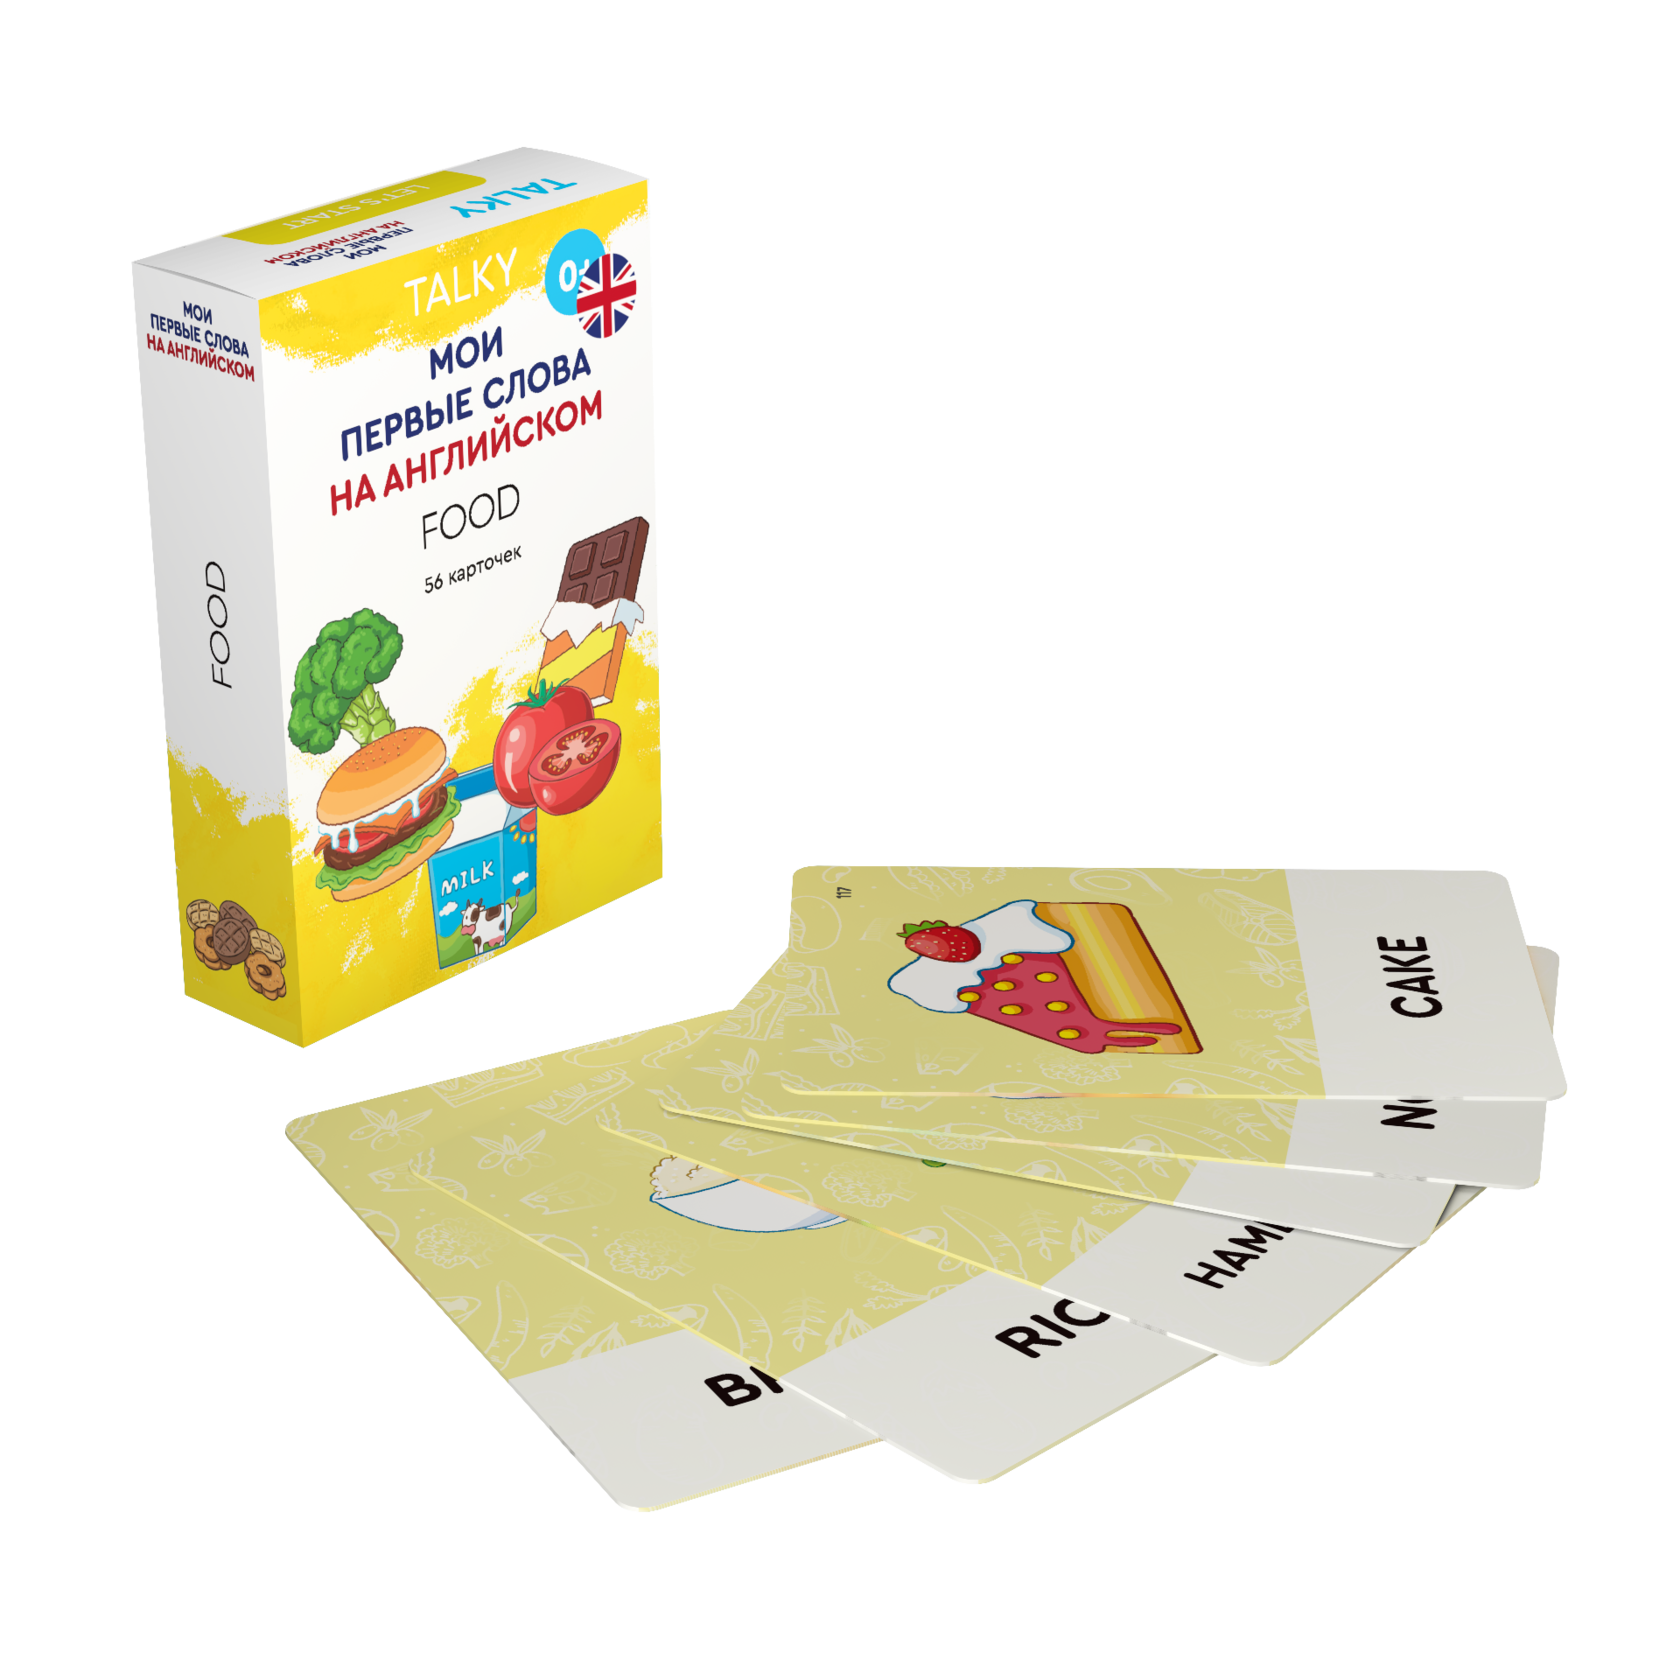 Развивающие карточки для детей LUMICUBE для TALKY, на англ. языке, еда, 56шт. KDTKE02-FOOD lumicube умные карточки talky на русском языке животные